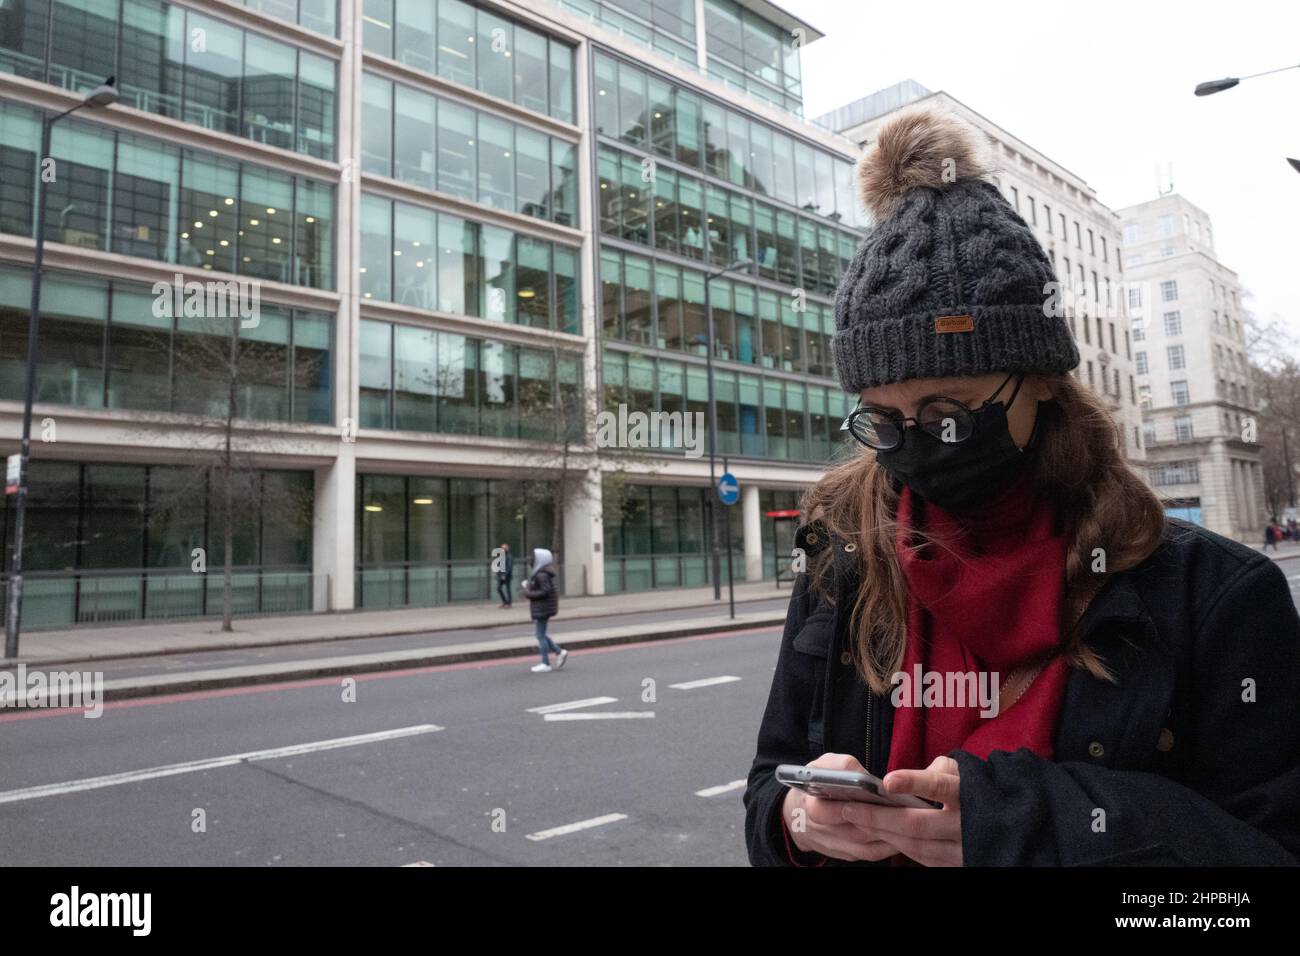 Femme portant un chapeau en laine, des lunettes et un masque facial à l'aide d'un téléphone portable dans une rue de Londres au Royaume-Uni Banque D'Images